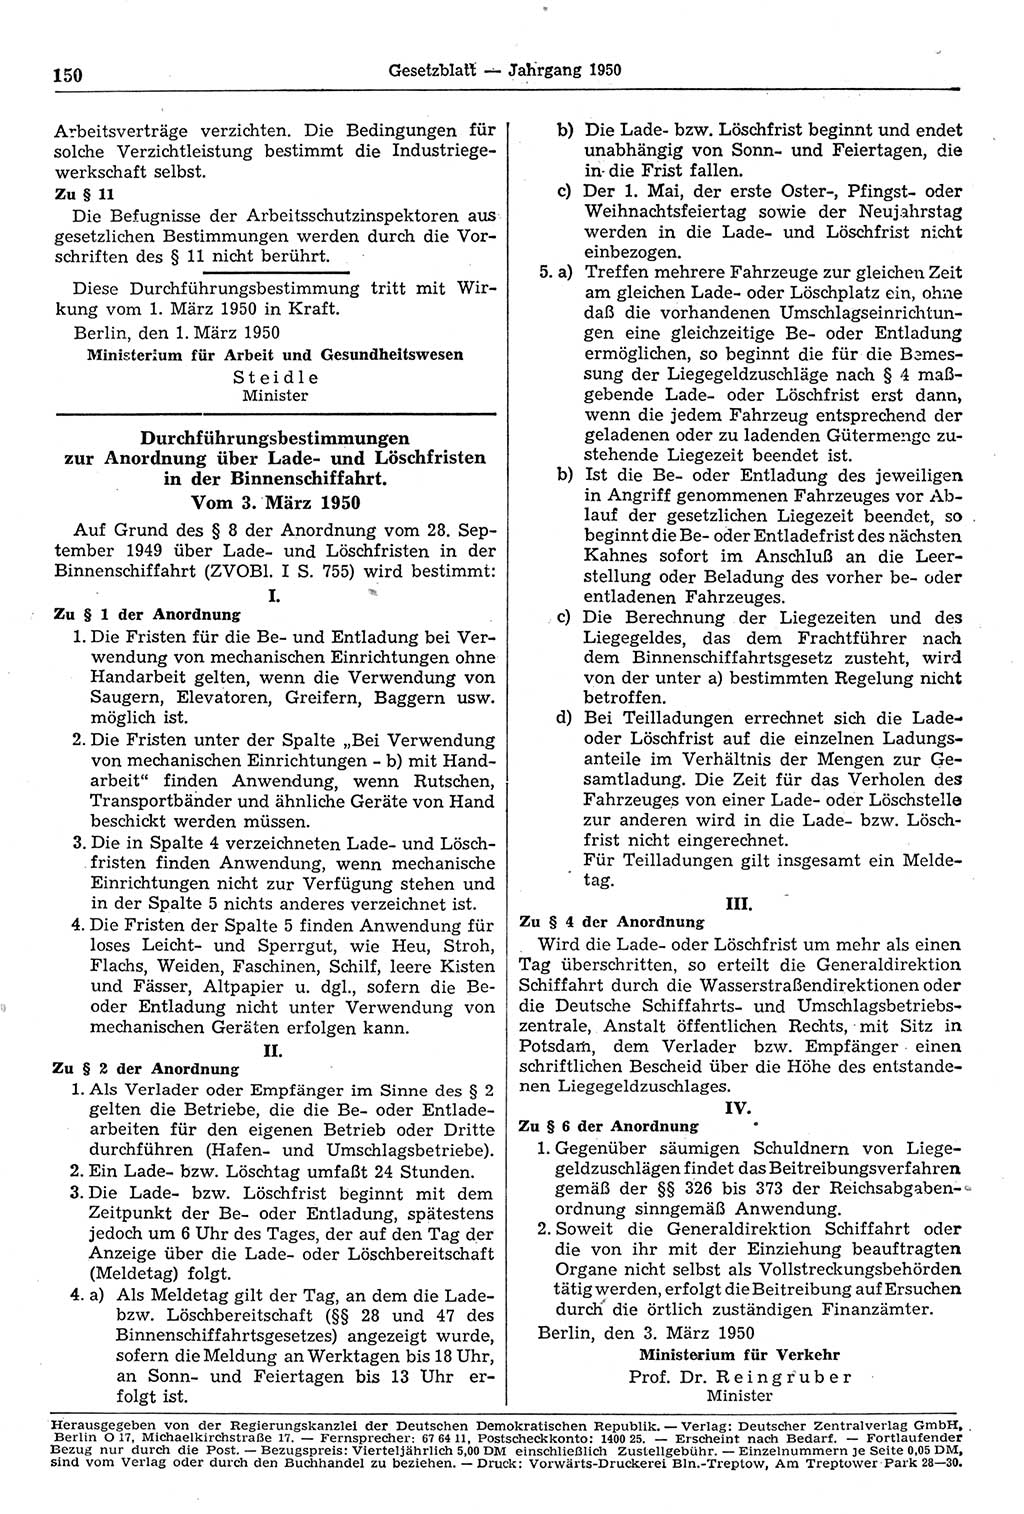 Gesetzblatt (GBl.) der Deutschen Demokratischen Republik (DDR) 1950, Seite 150 (GBl. DDR 1950, S. 150)